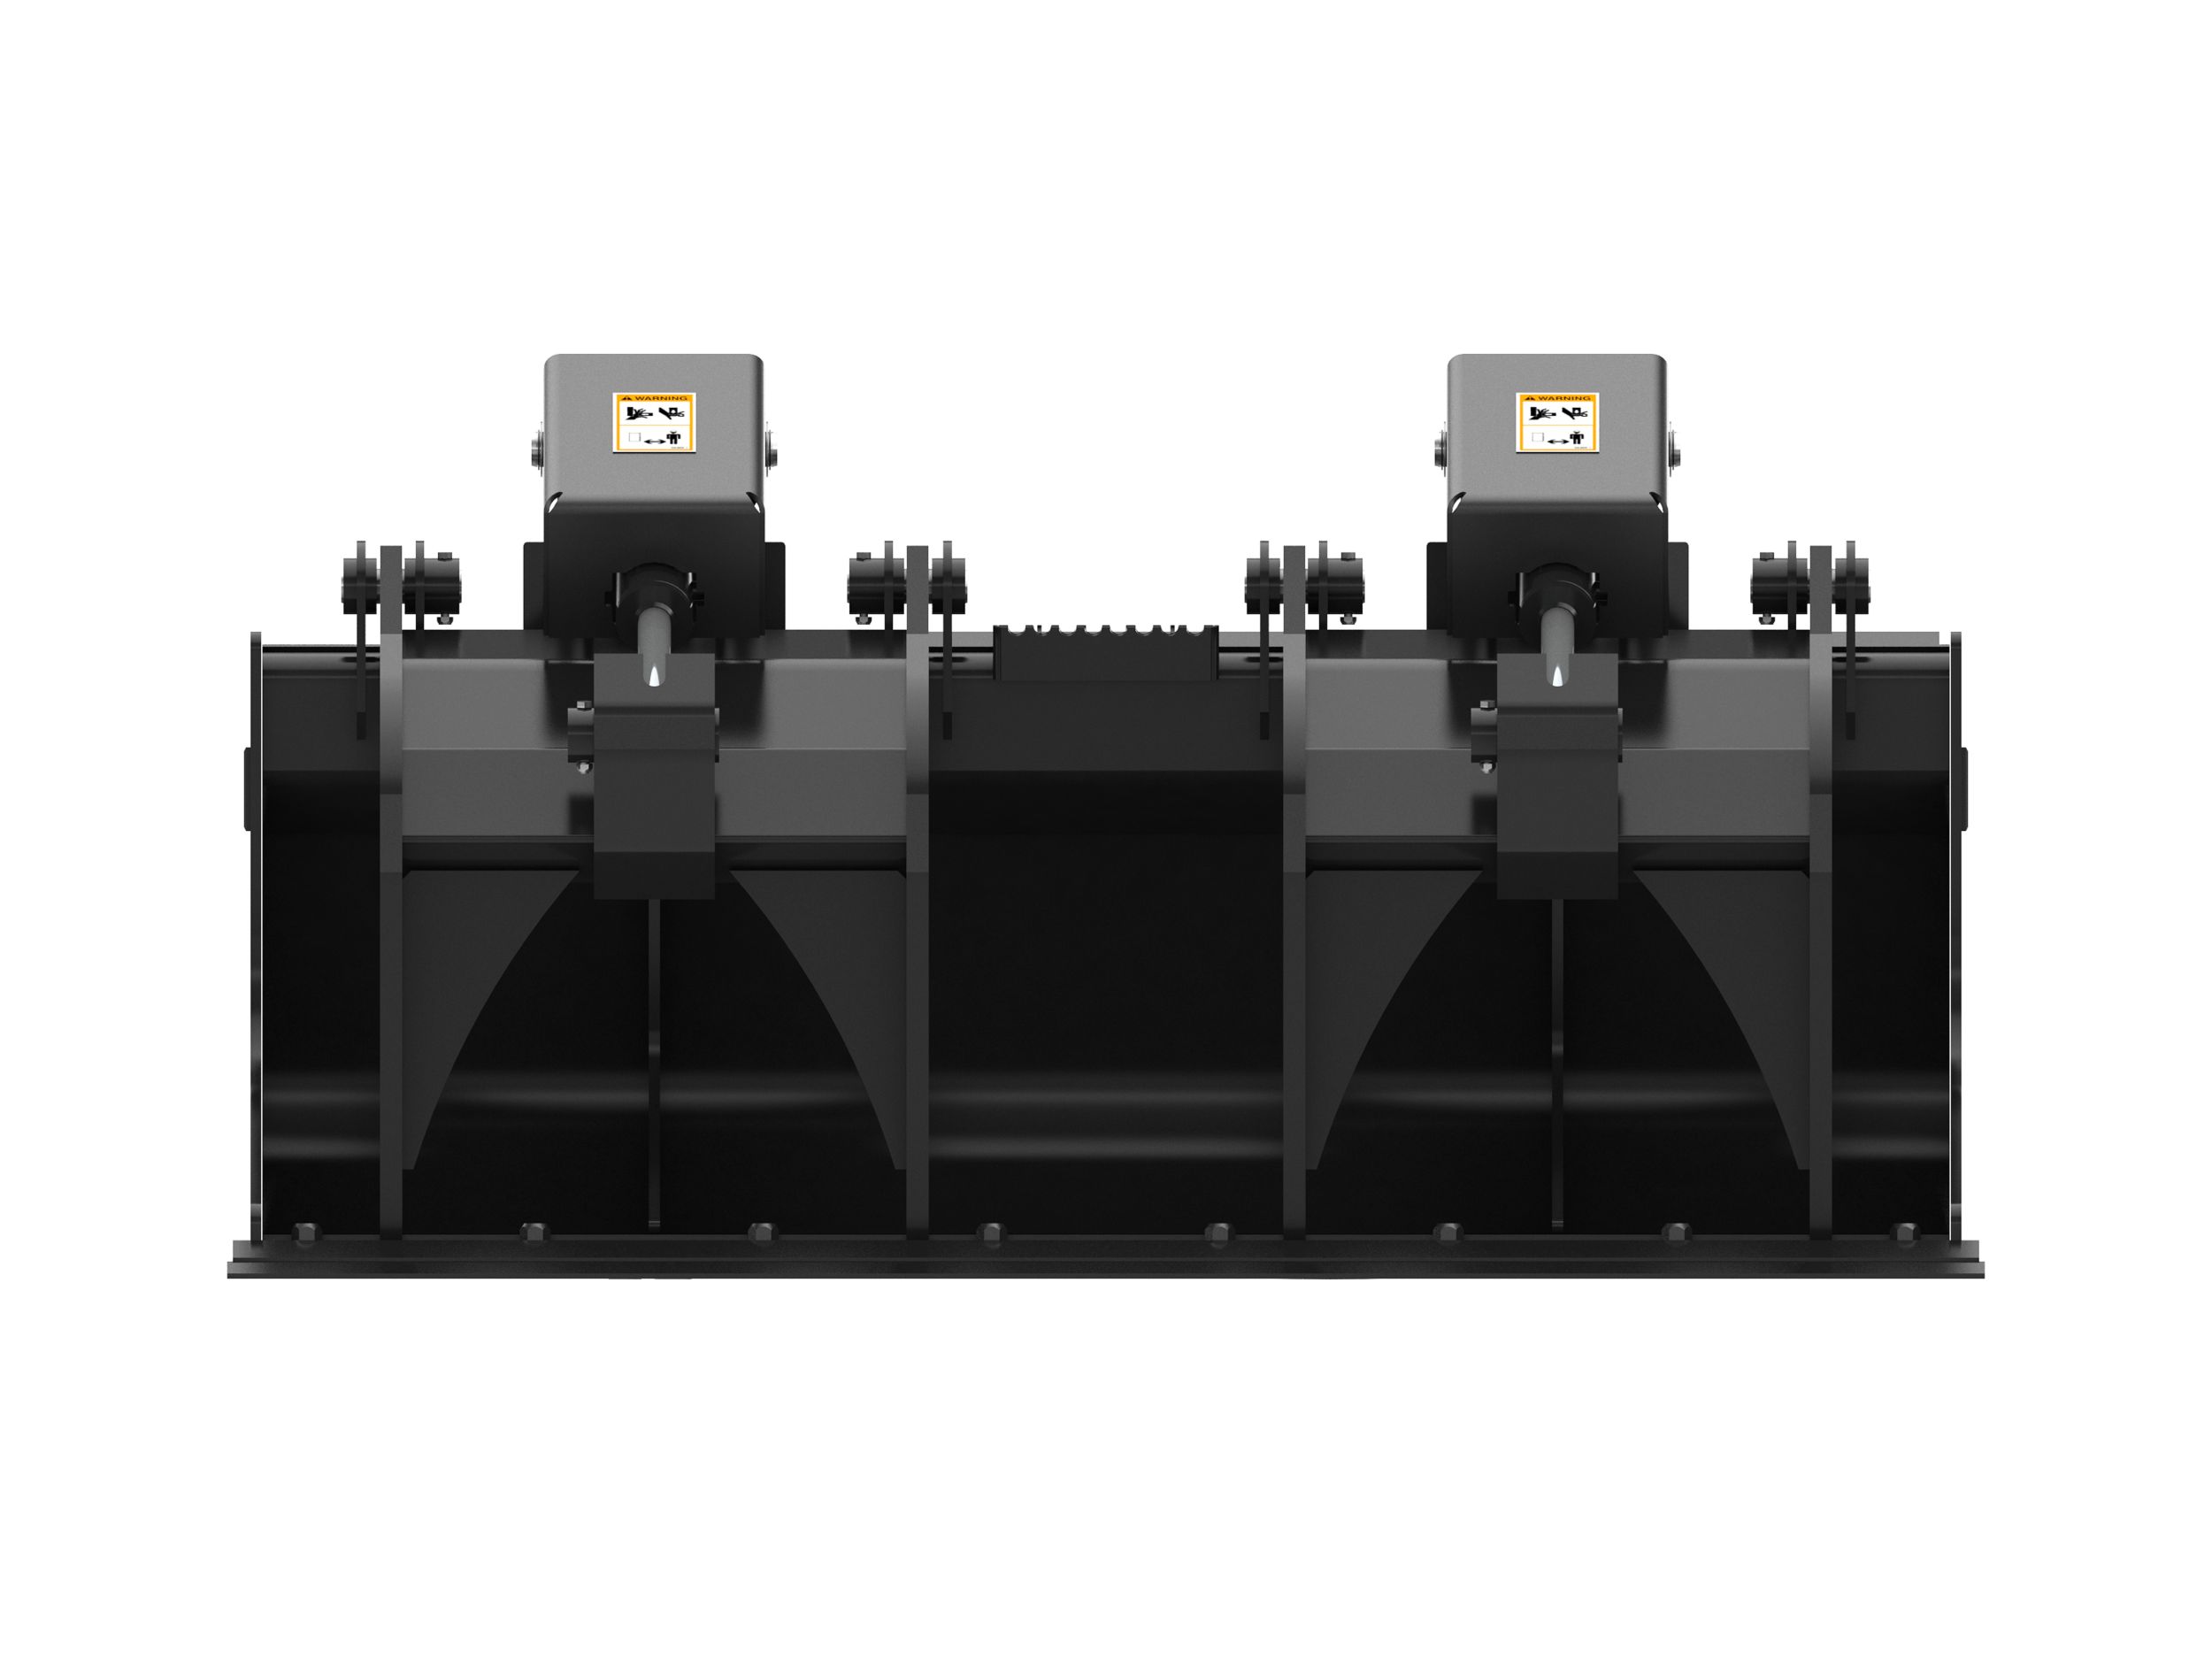 CV16B compactors